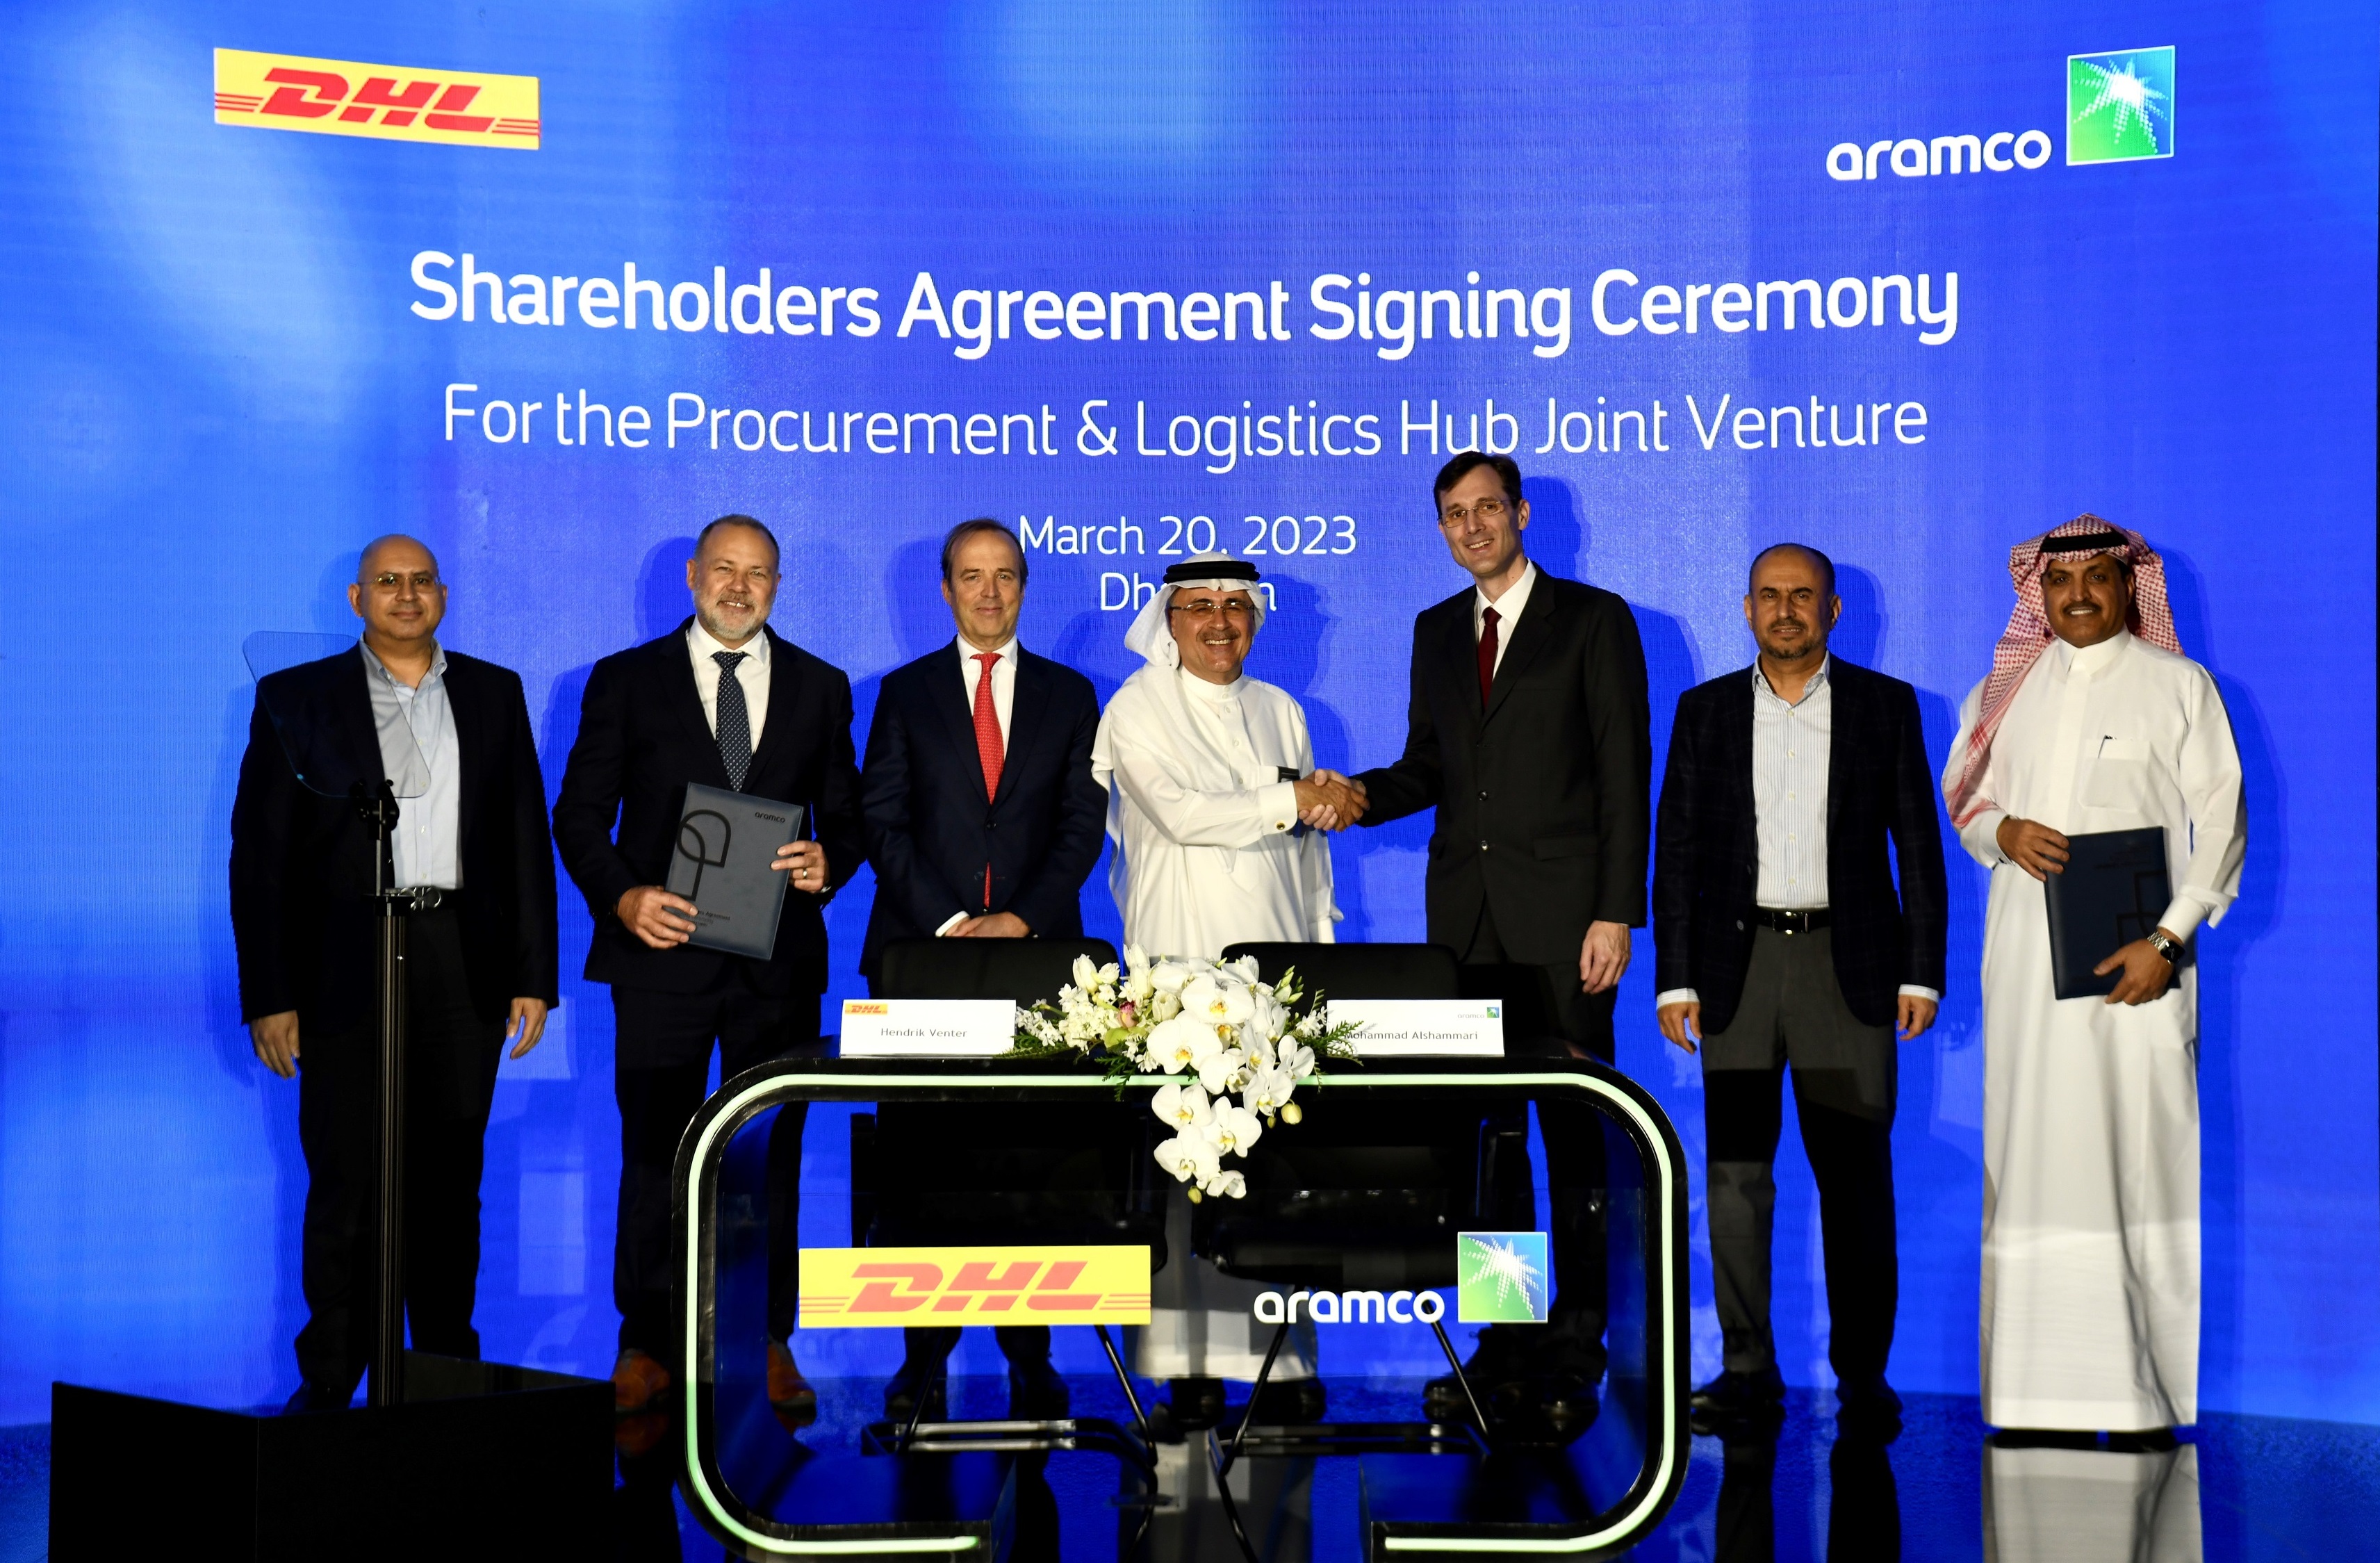 Technoretail - Nuova joint venture per l'Arabia Saudita tra DHL Supply Chain e Aramco 